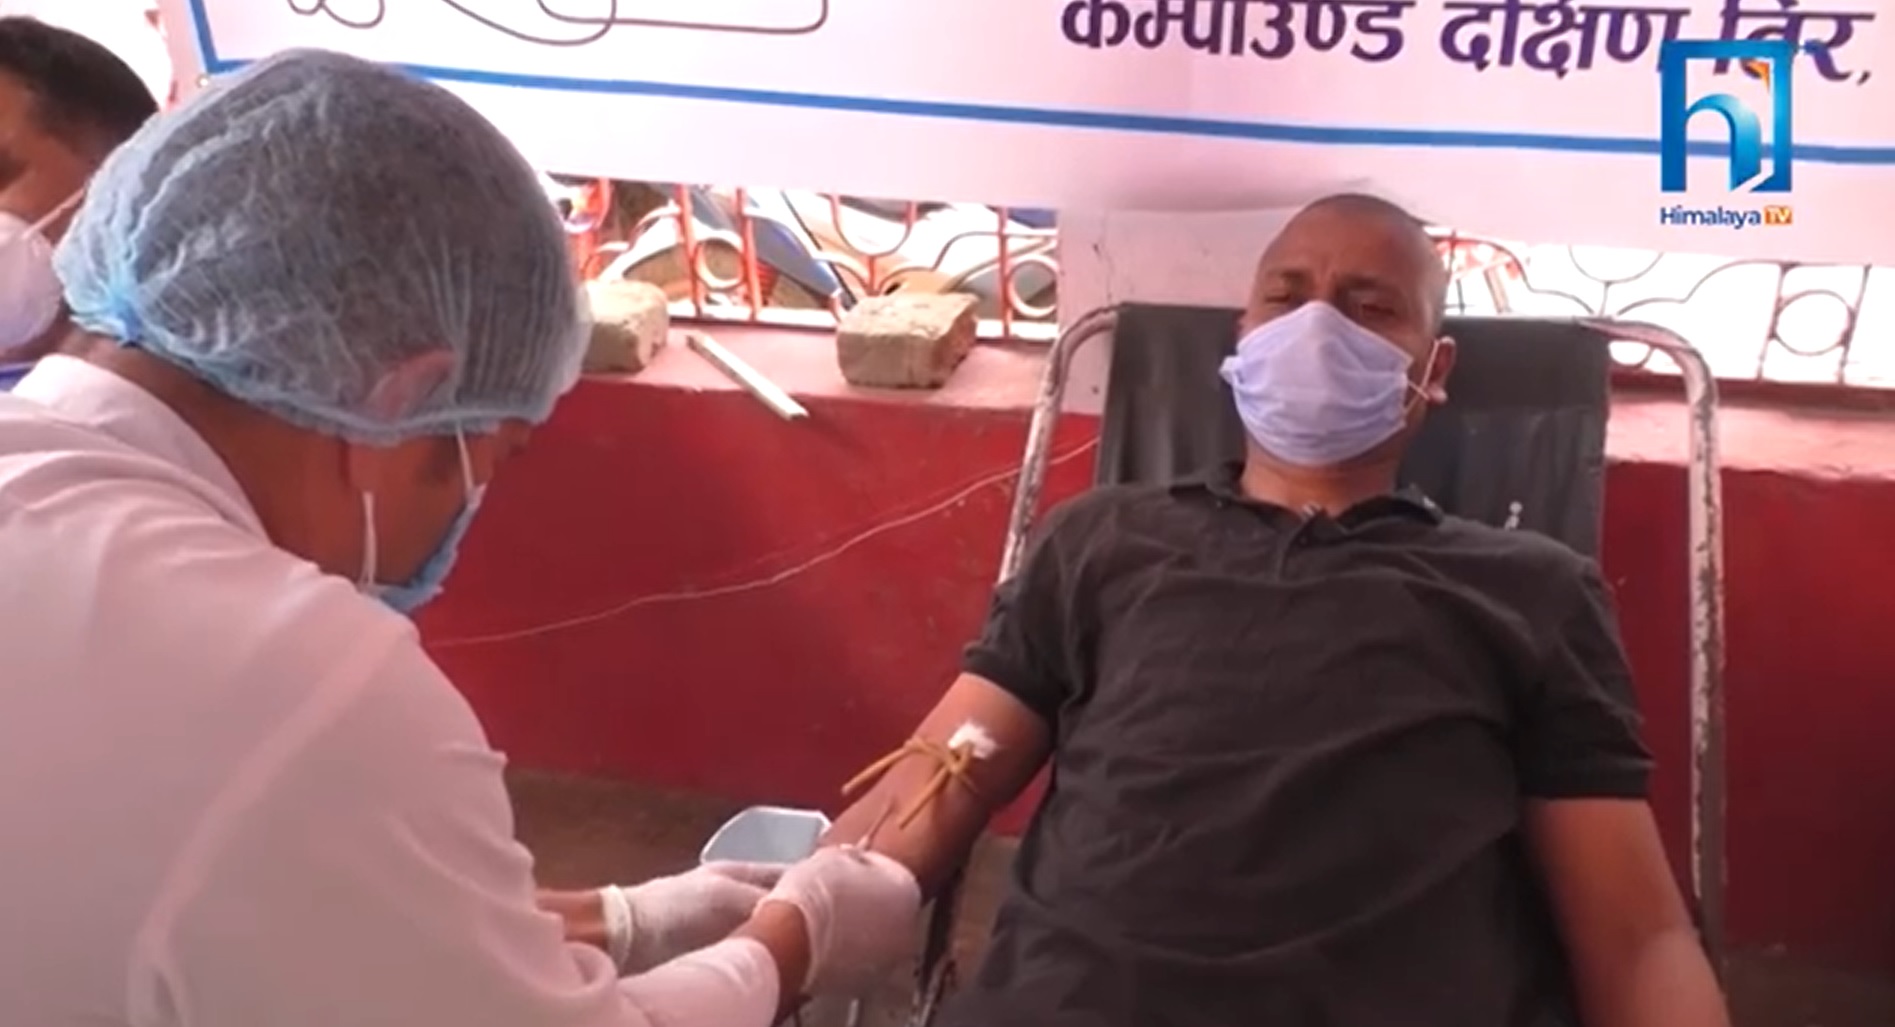 रक्तदानका कार्यक्रम रोकिँदा ब्लड बैंकमै रगत अभाव (भिडियो रिपोर्टसहित)